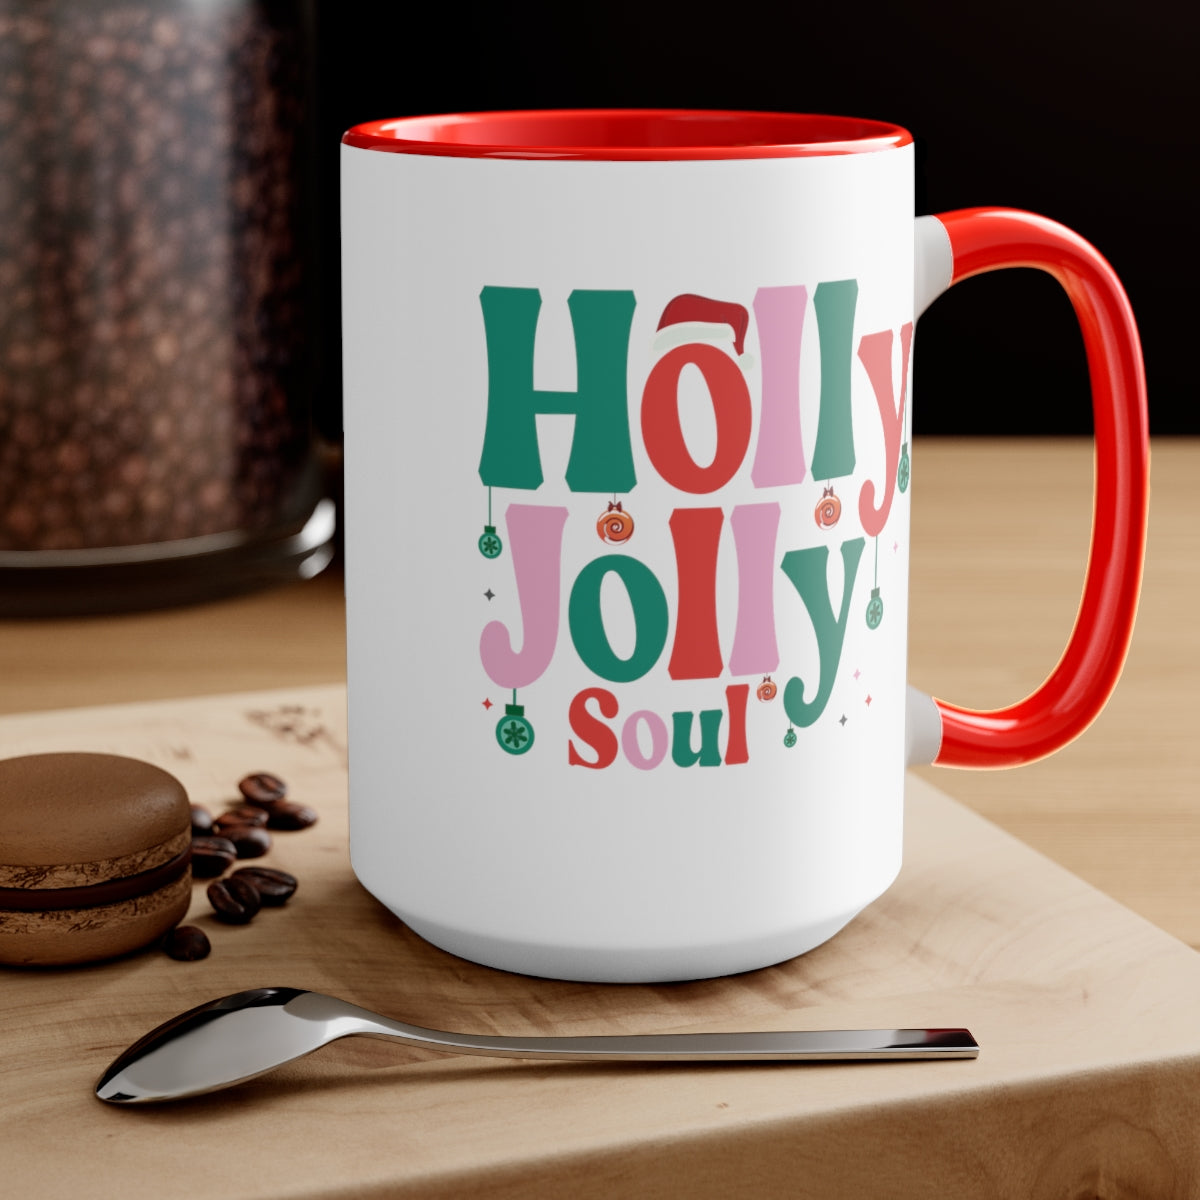 Merry Christmas Holly Coffee Mug